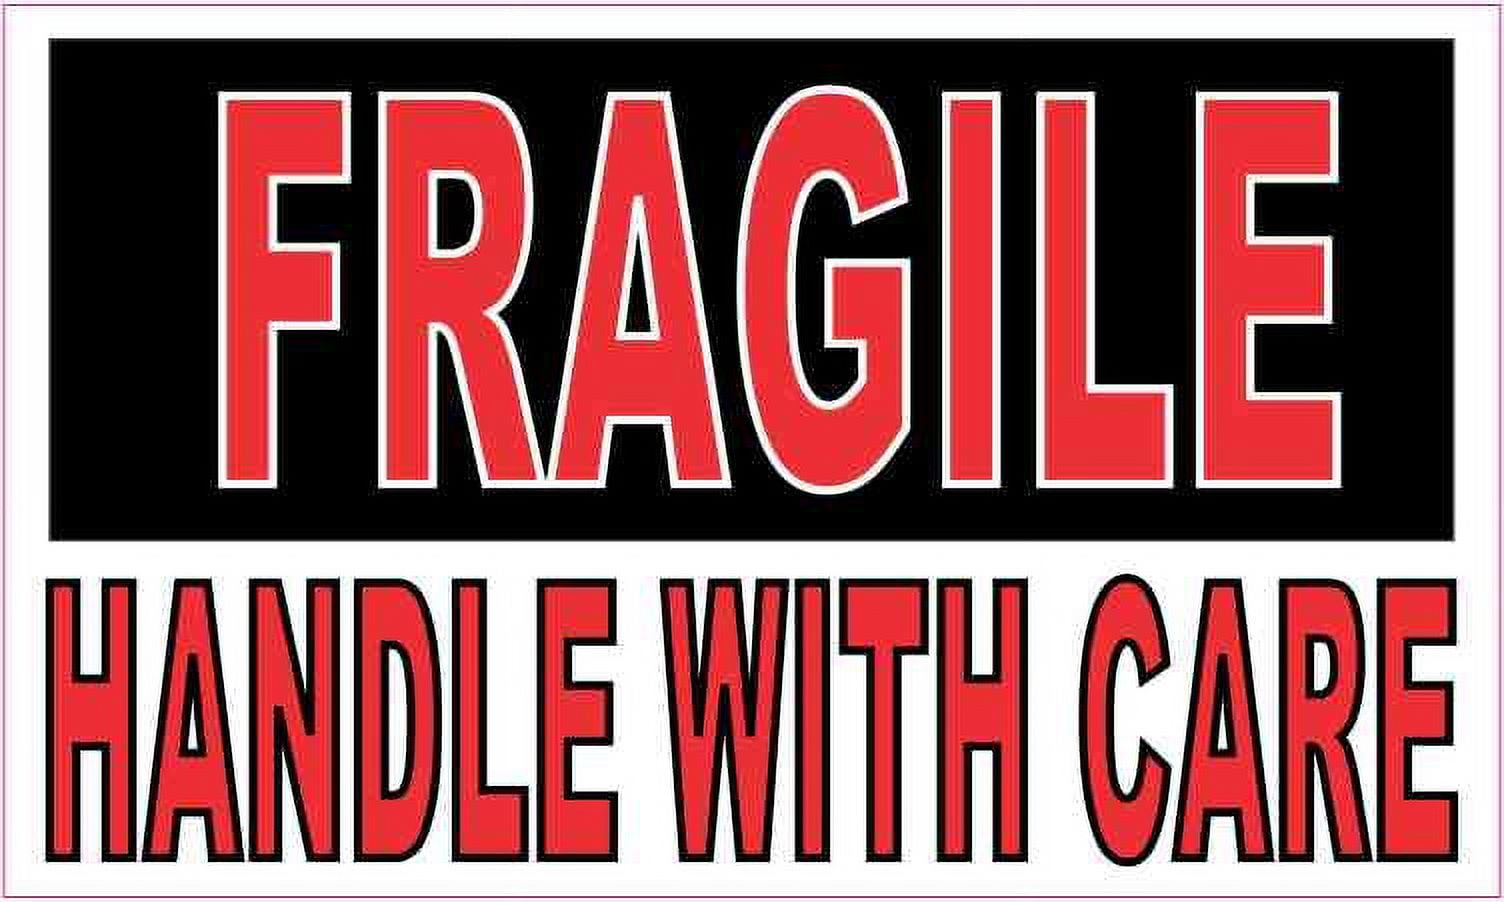 brad downie add fragile handle with care xxx photo